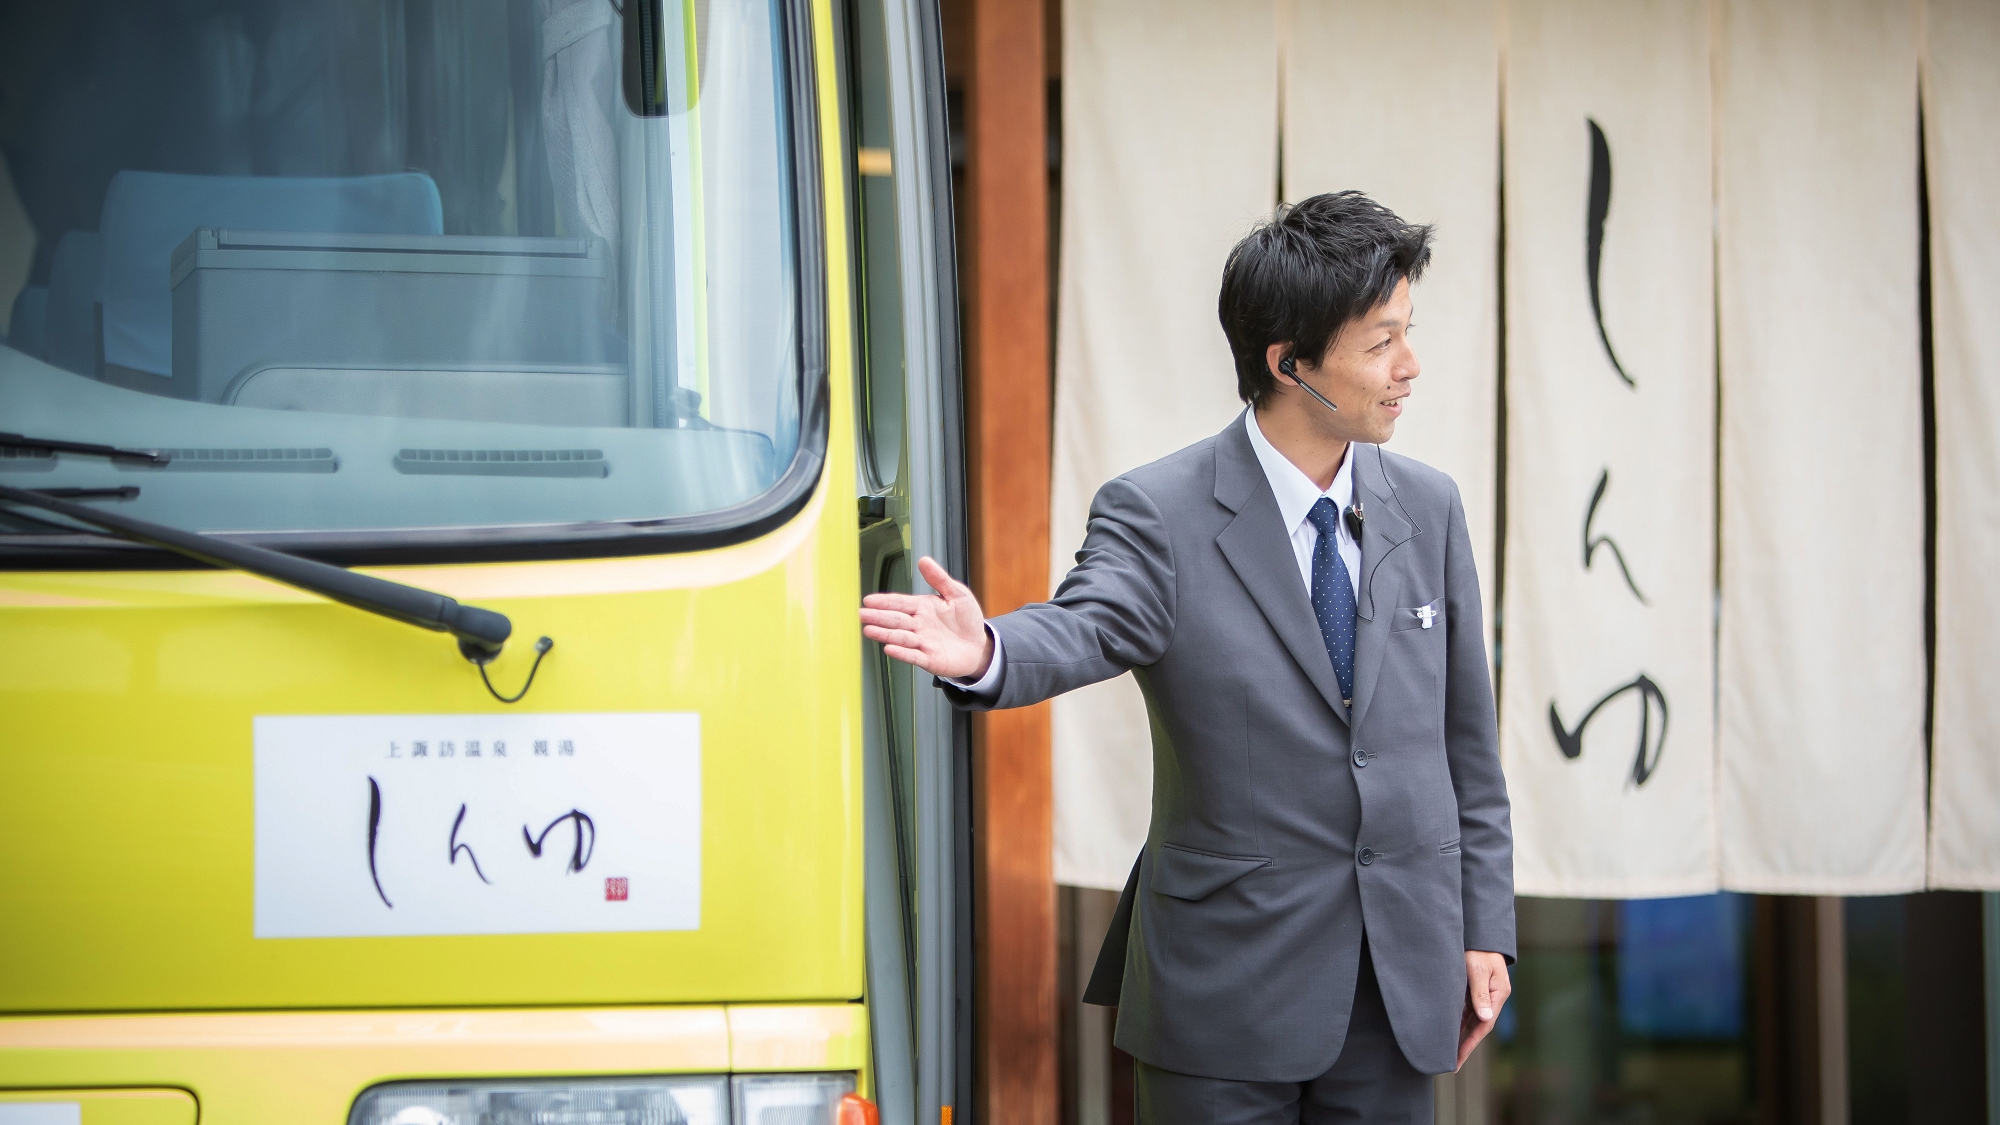 【無料参拝バス】諏訪大社四社巡りバスはこちらです。